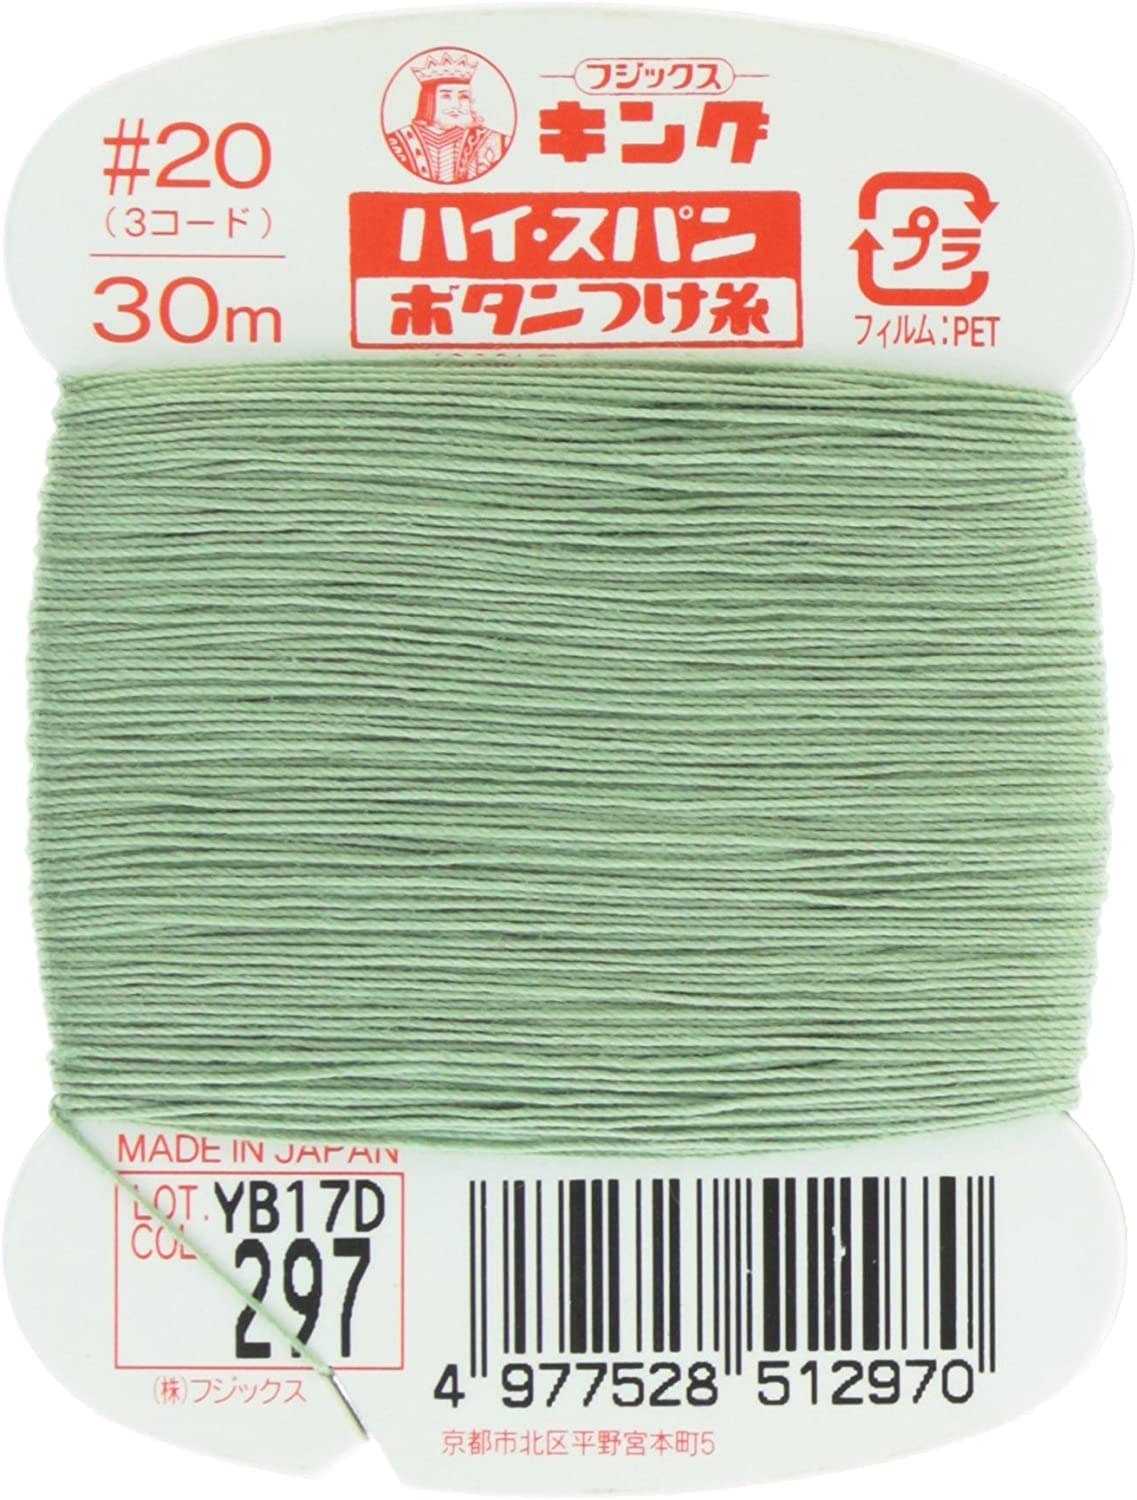 FK51-297 ハイスパンボタンつけ糸 #20 30m巻 (枚)